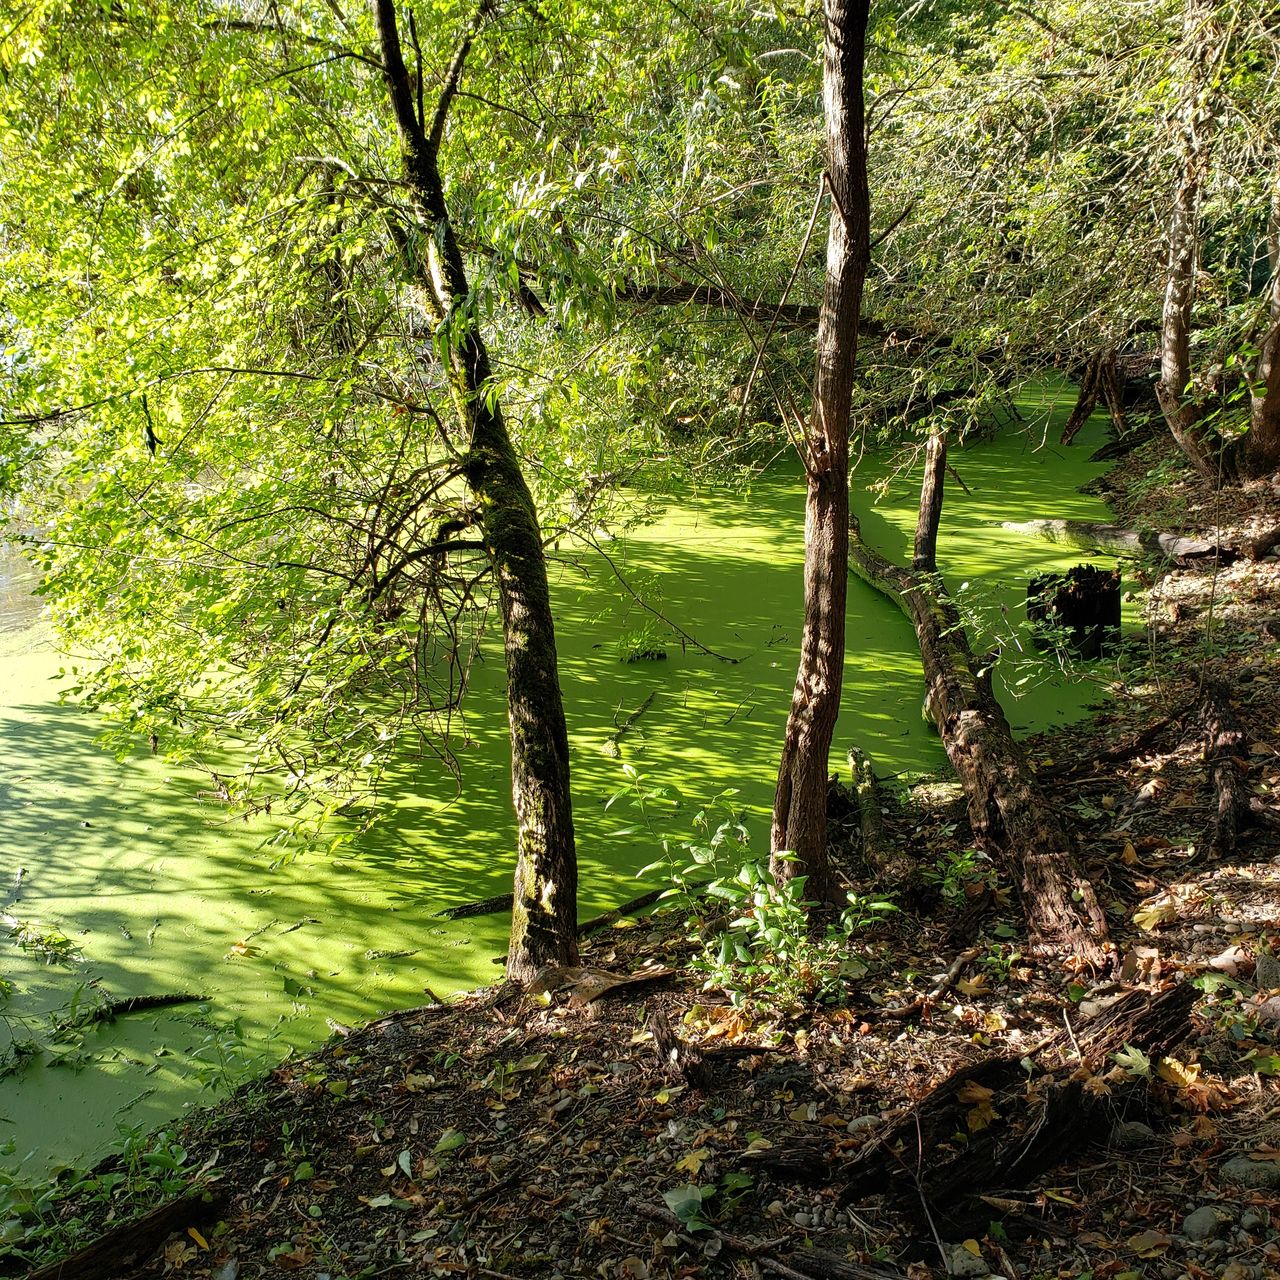 green algae on still water under trees